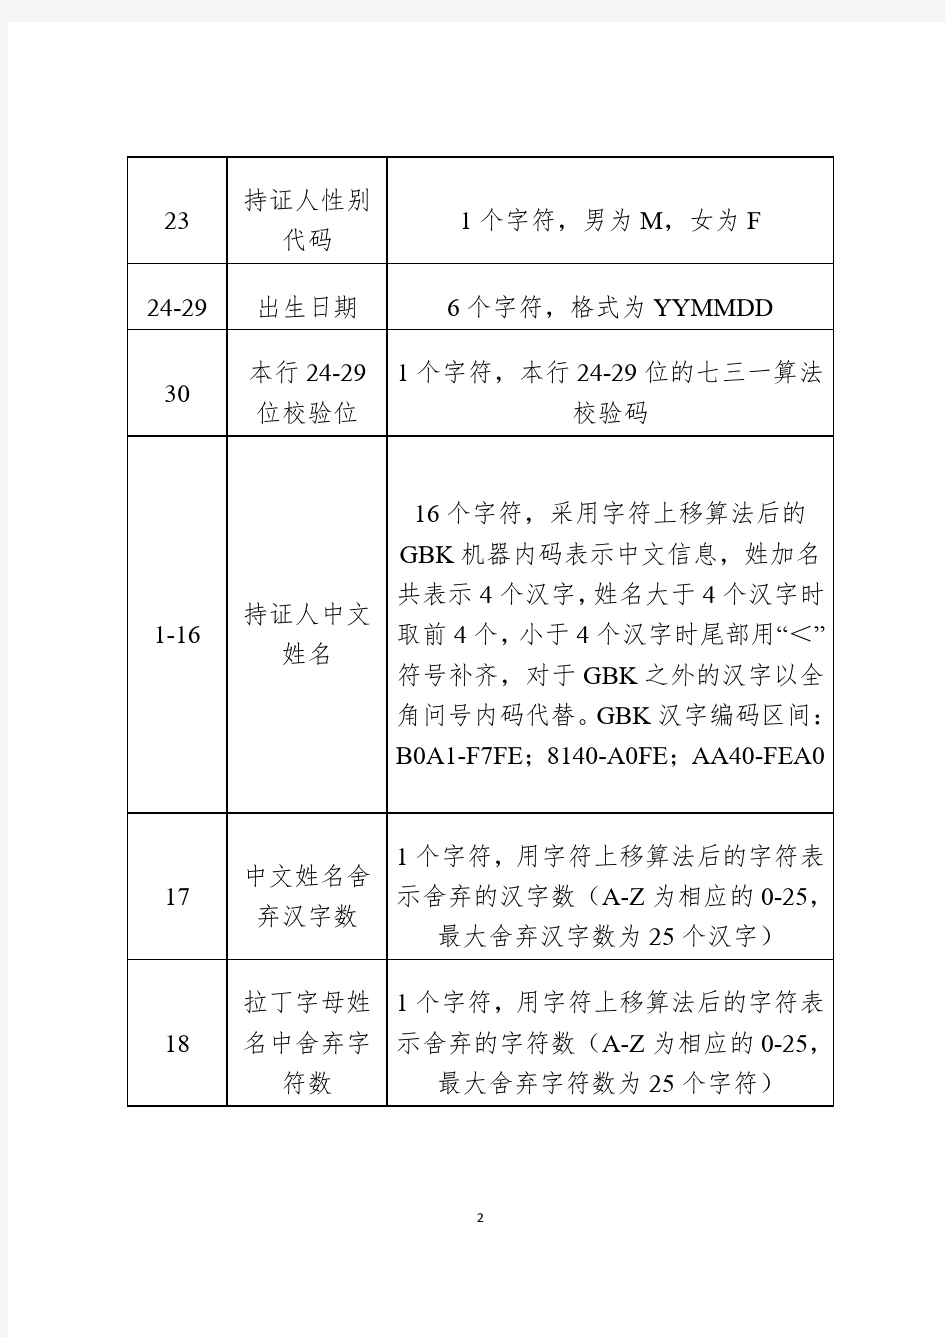 2015版台湾居民来往大陆通行证机读码规则